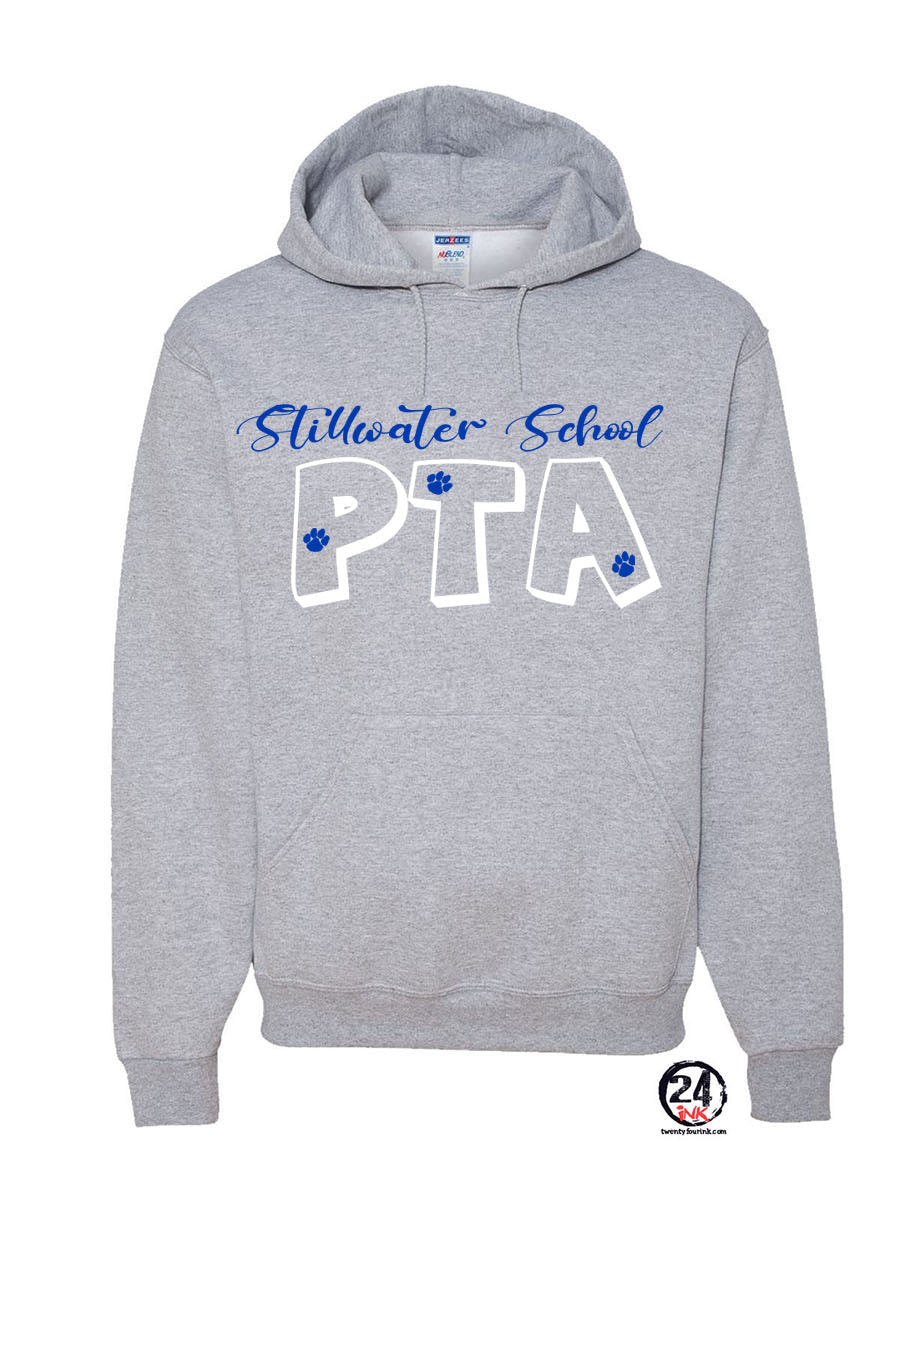 Stillwater Design 12 Hooded Sweatshirt